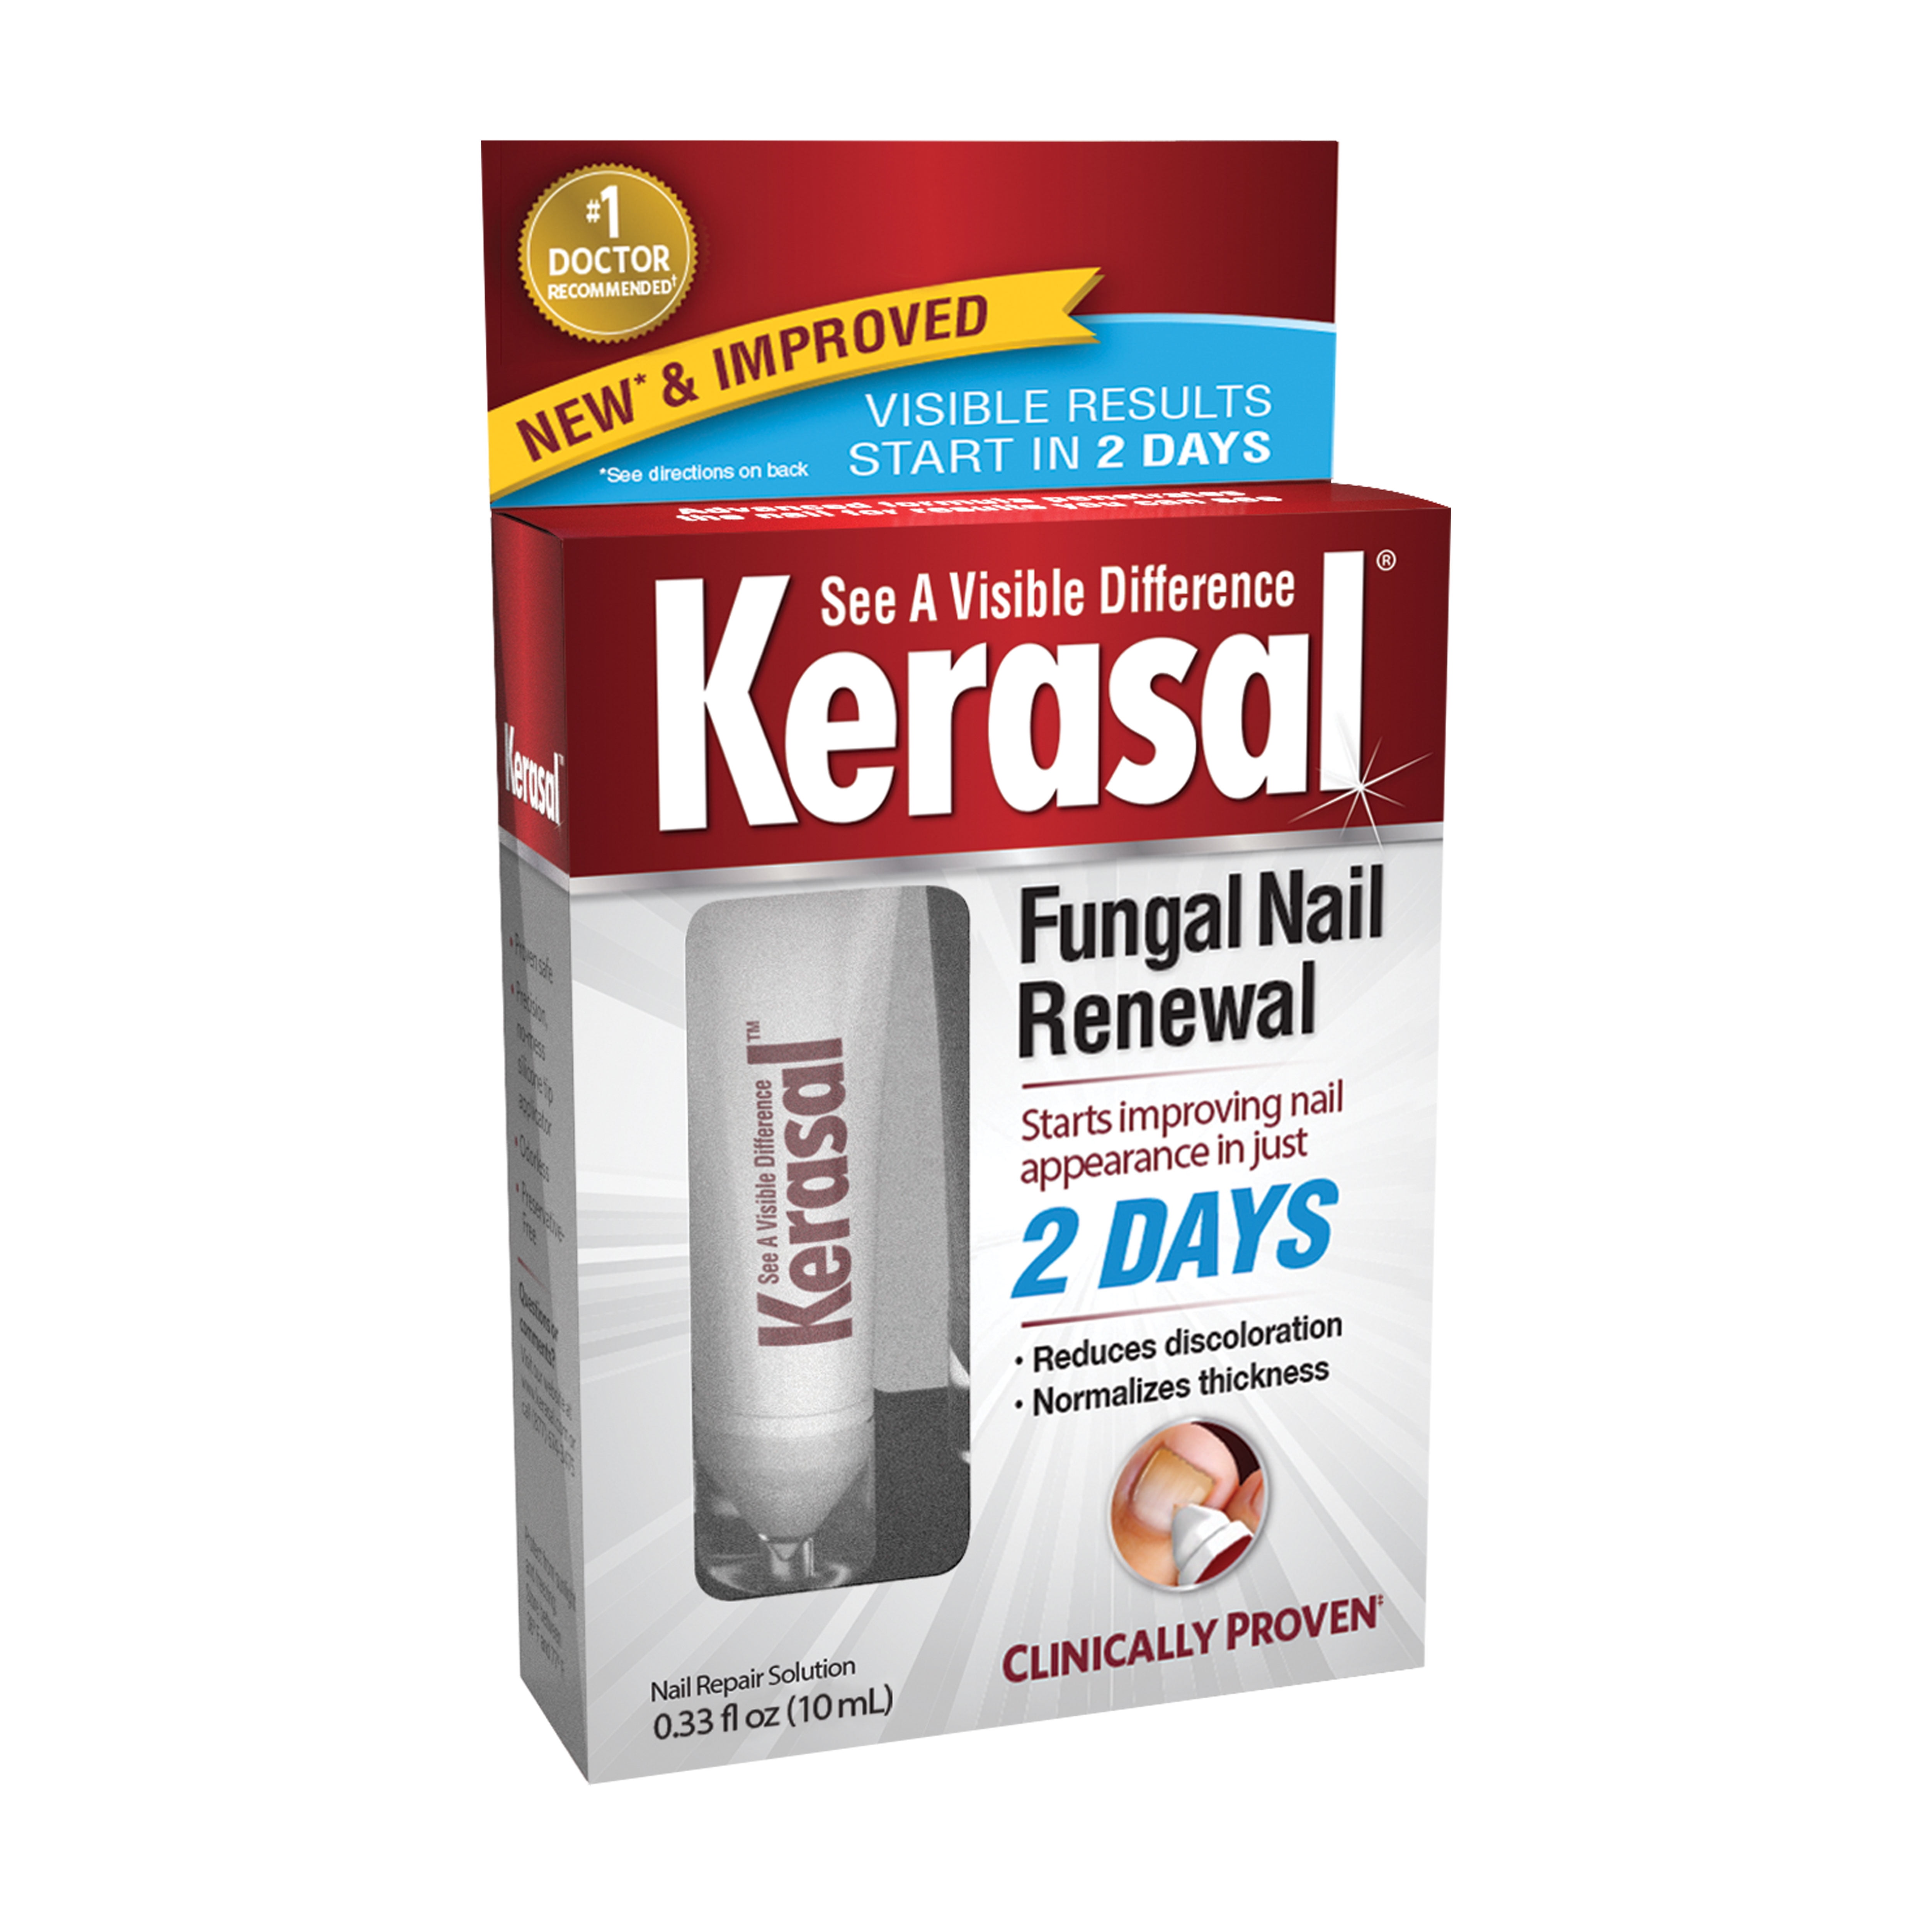 Kerasal Fungal Nail Renewal Treatment 10ml 0 33 fl oz Pack of 1 5a8d7118 0d03 42a9 a705 52ef661248e1.93af47f18ec0a3474e7e4a5320614355